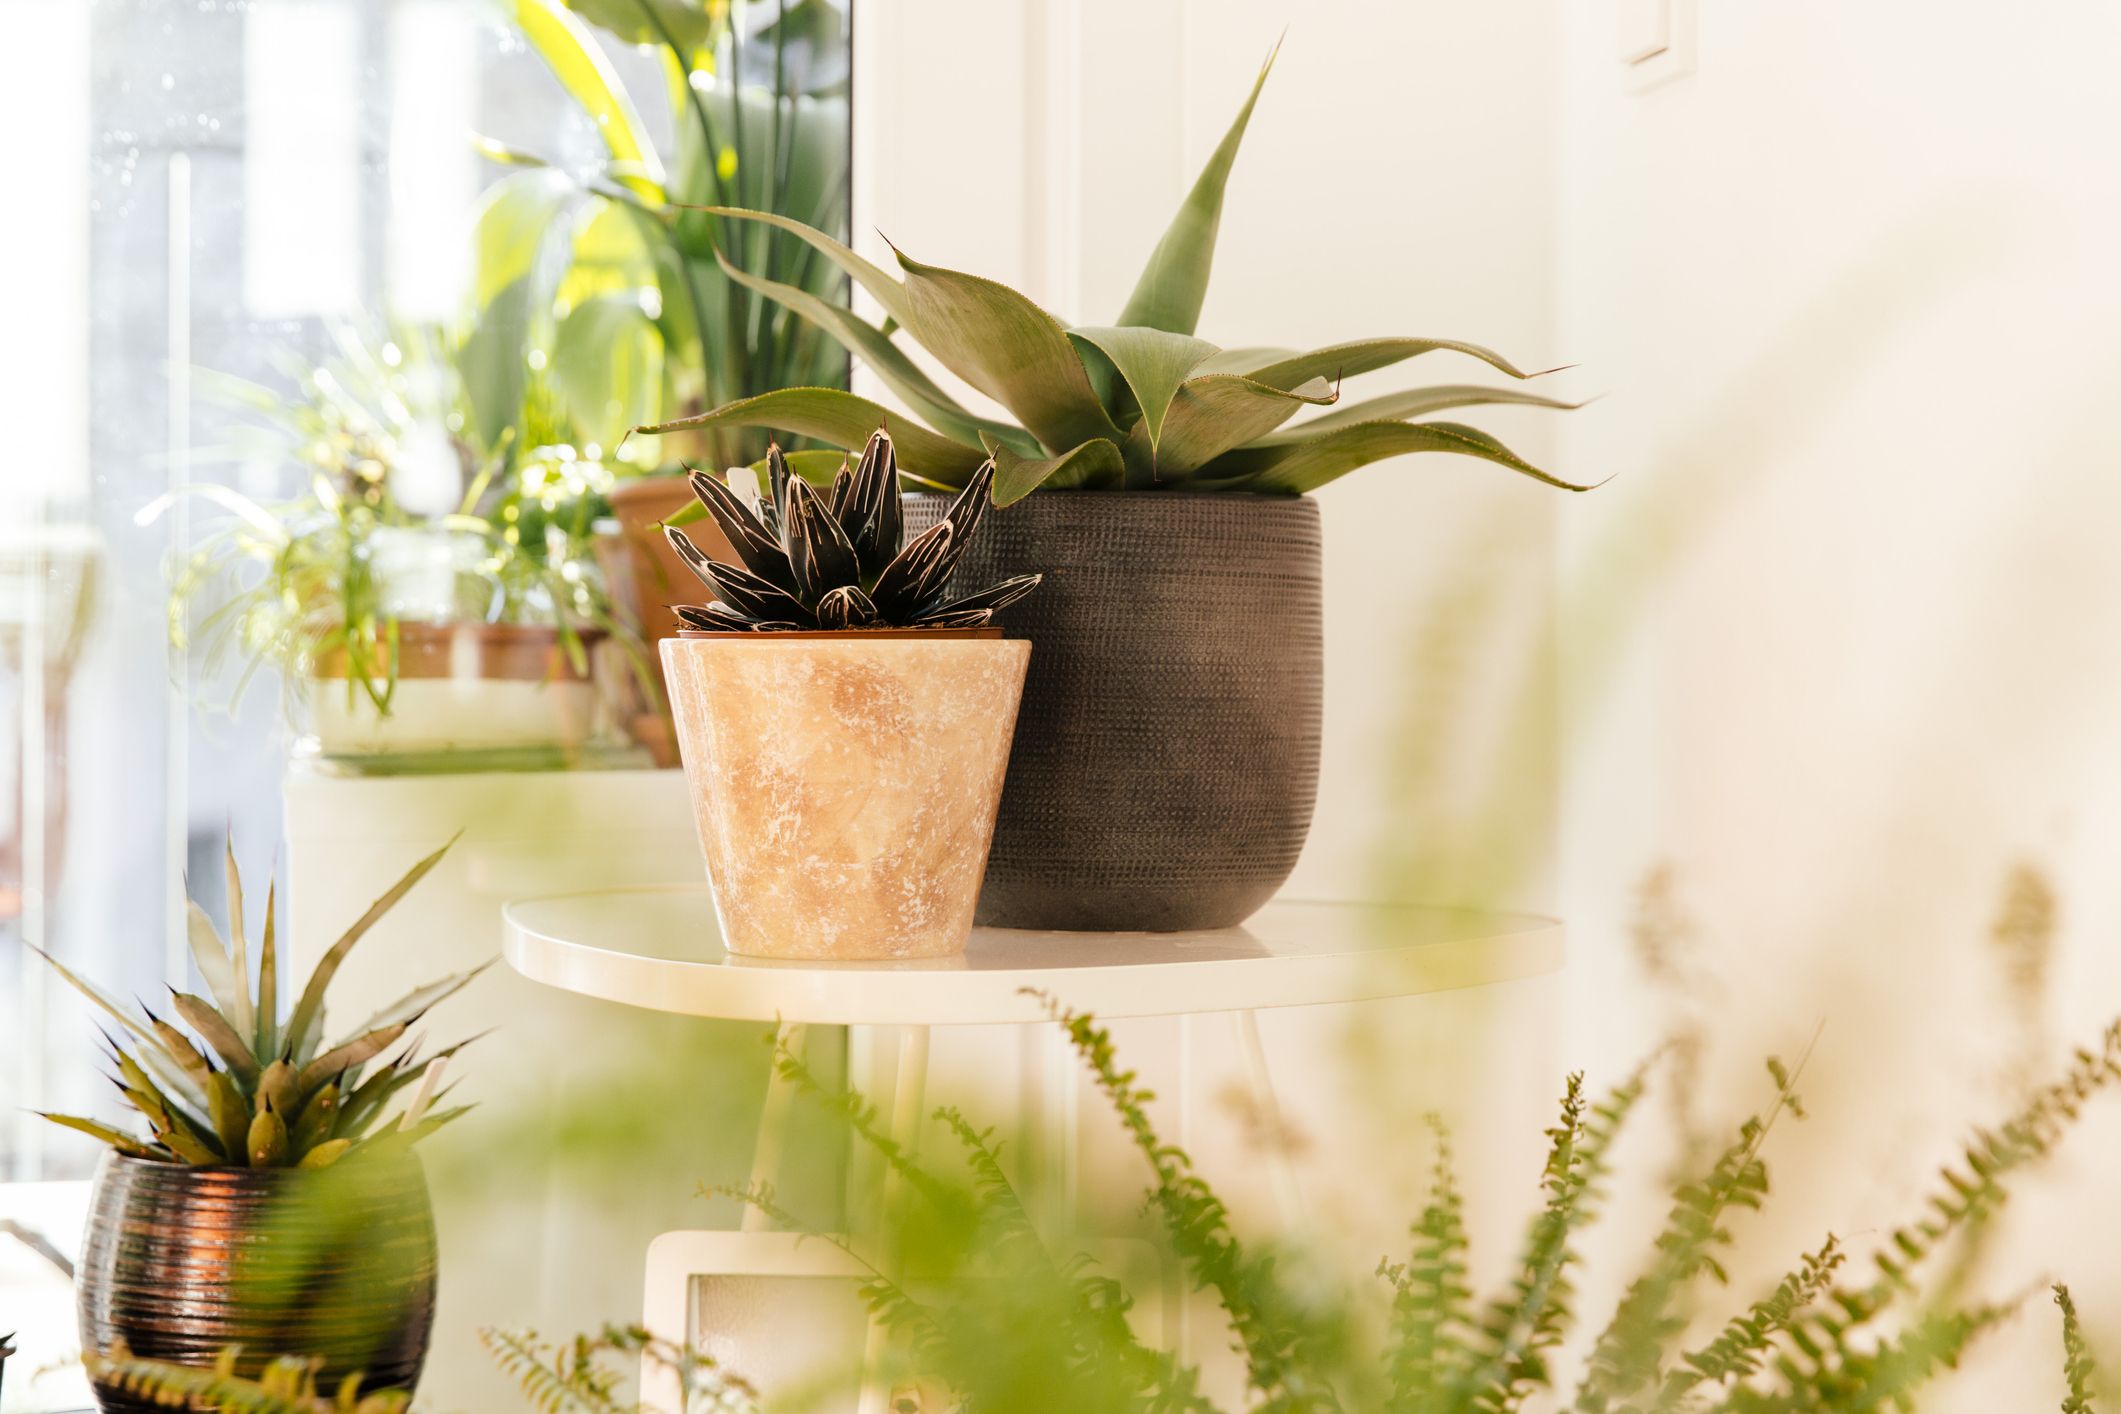 THE BLOOM TIMES 2 plantas artificiales para decoración de baño/oficina en  casa, pequeña vegetación artificial para decoración de casa (plantas en  maceta)